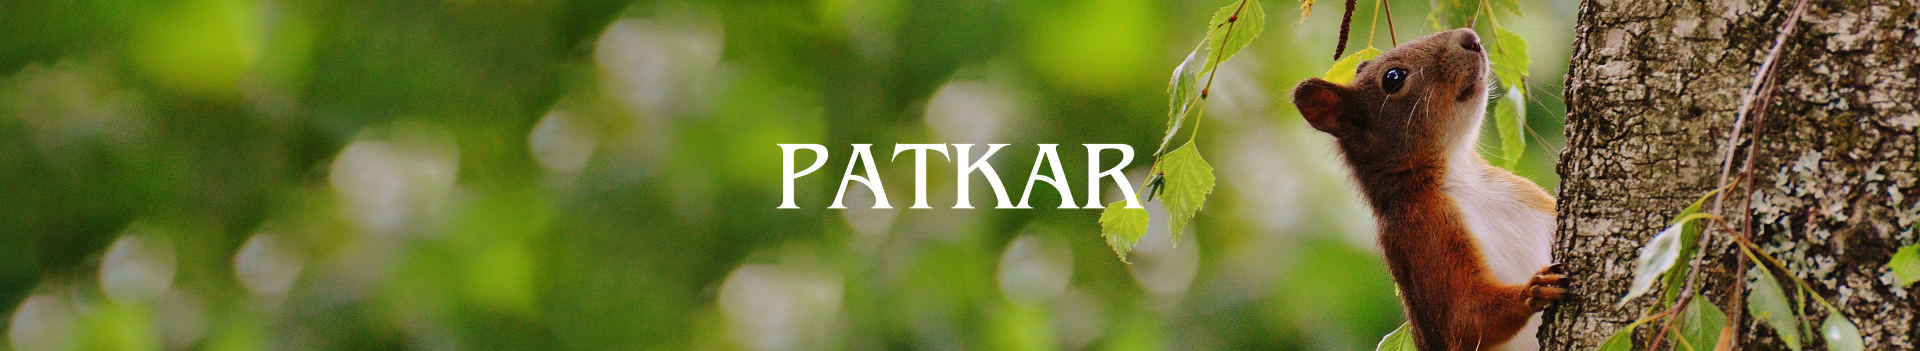 Patkar